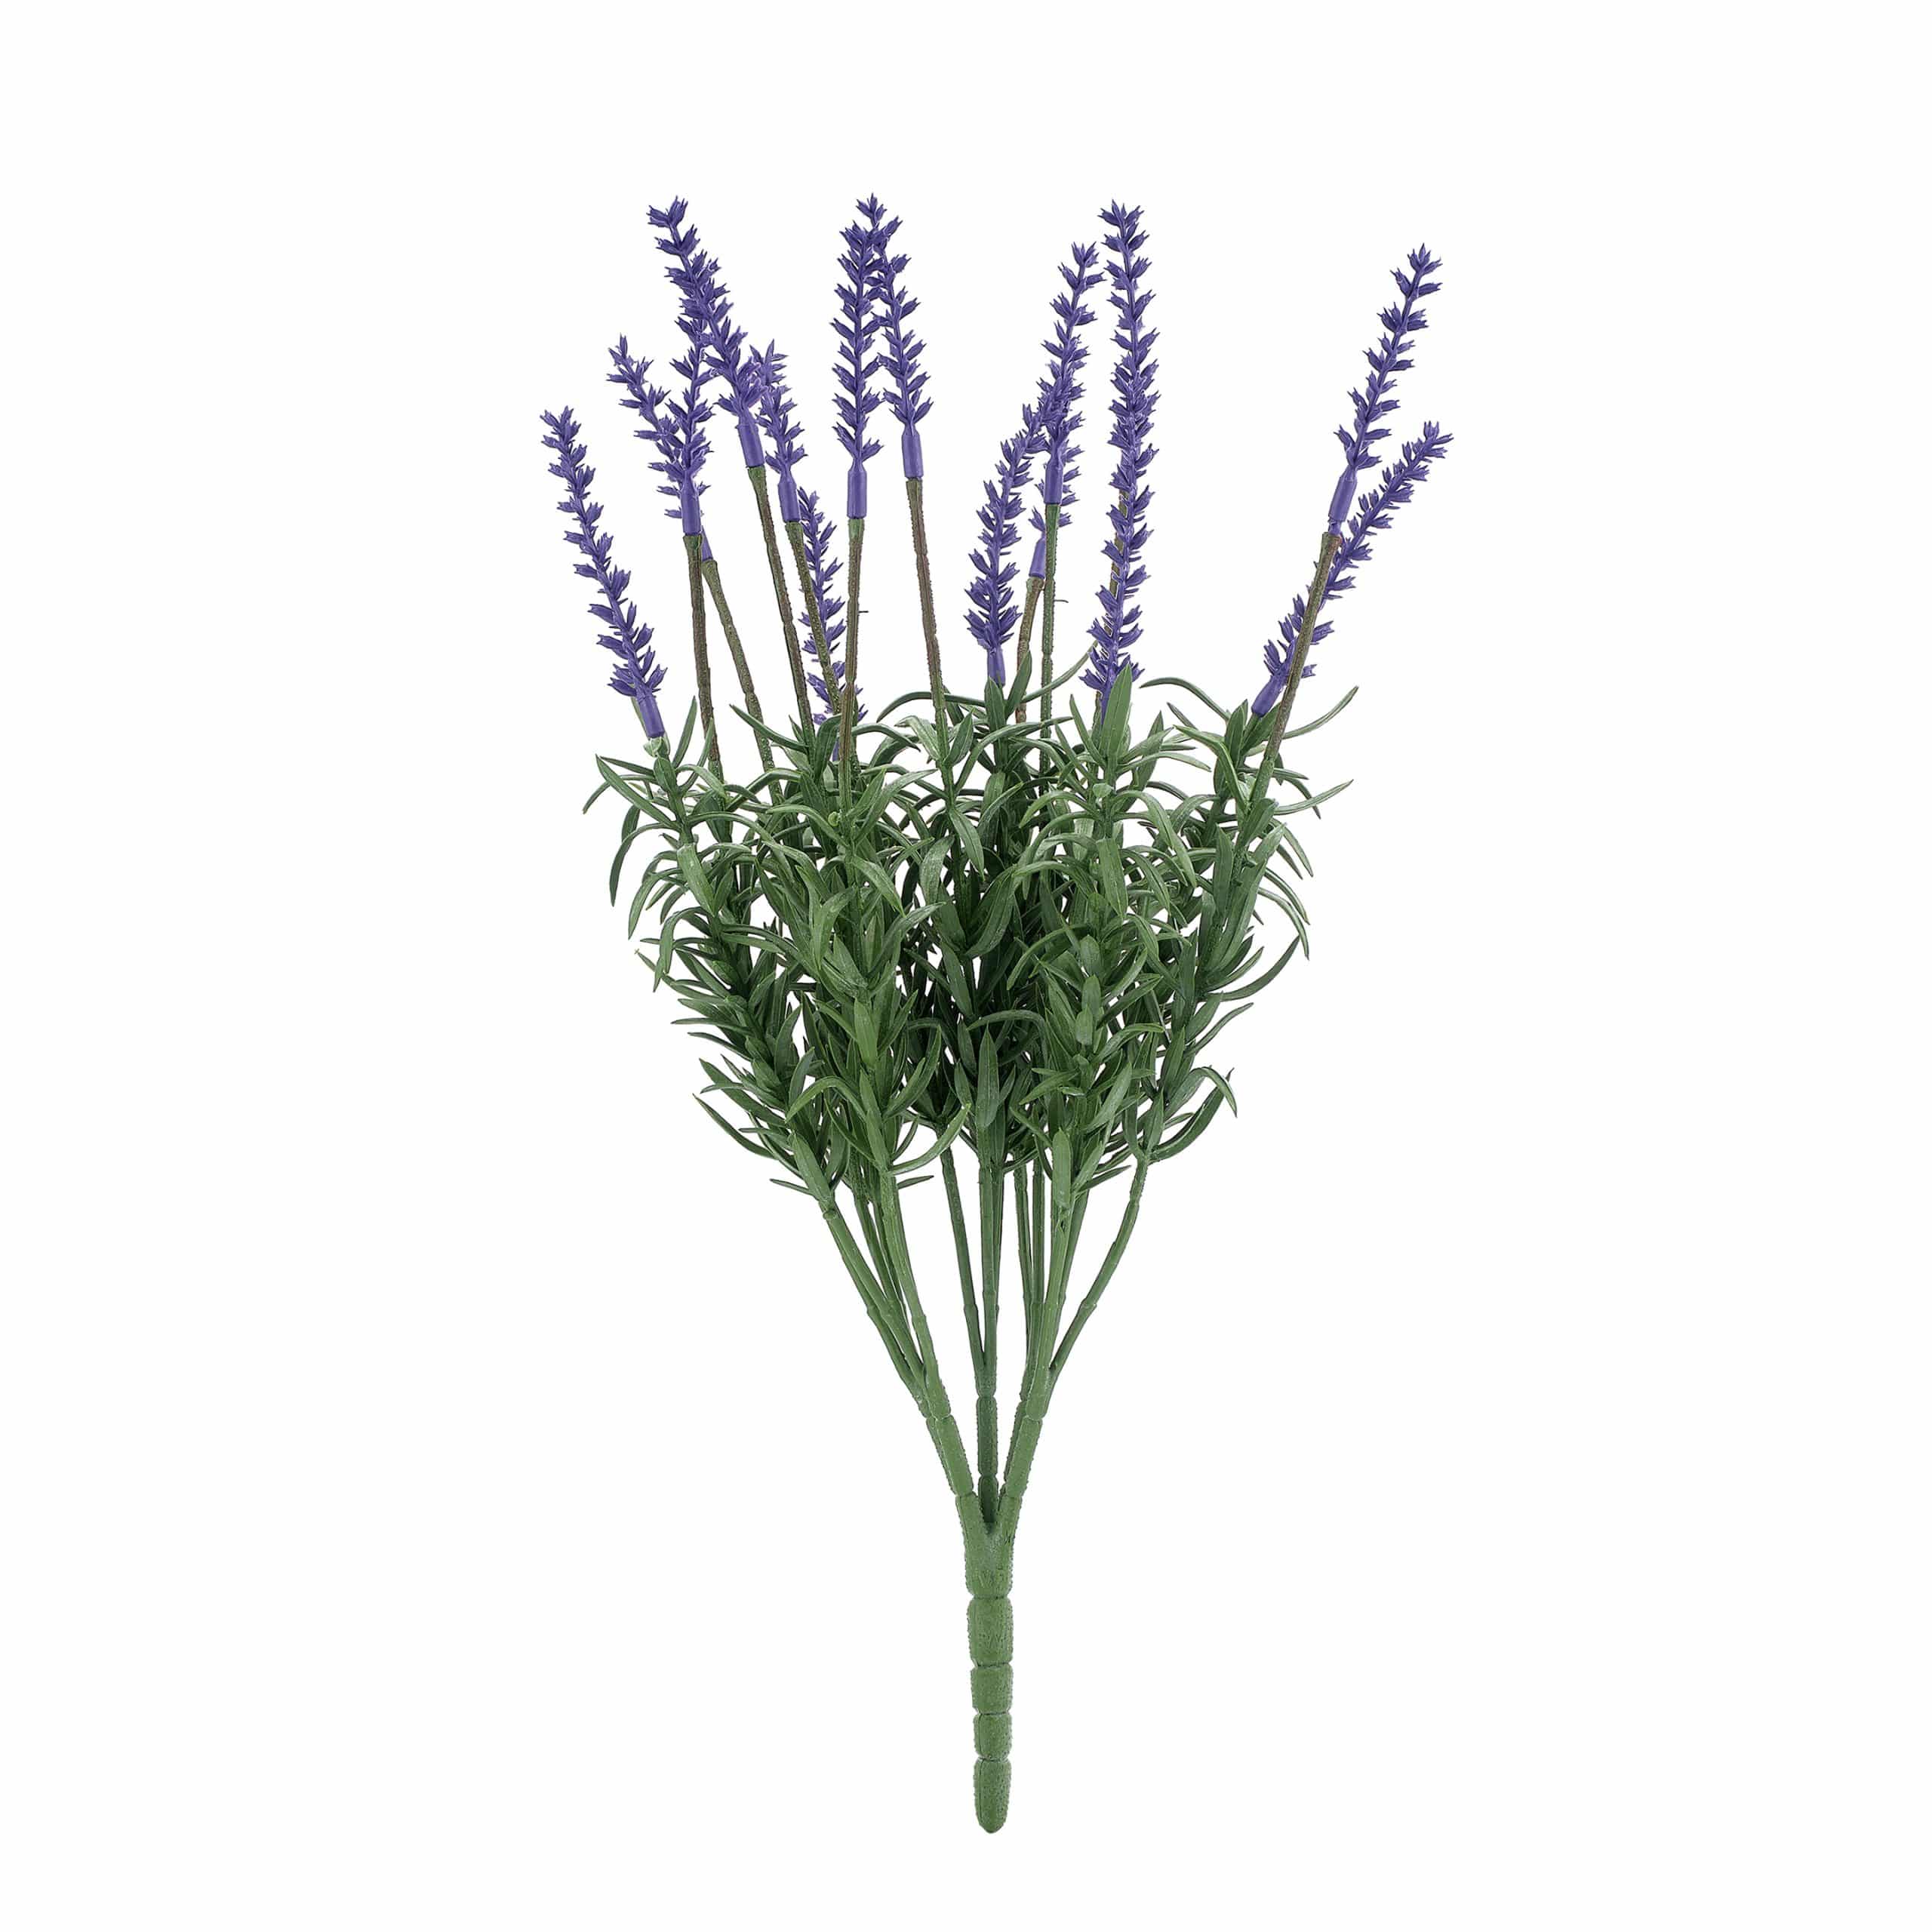 An artificial lavender plant